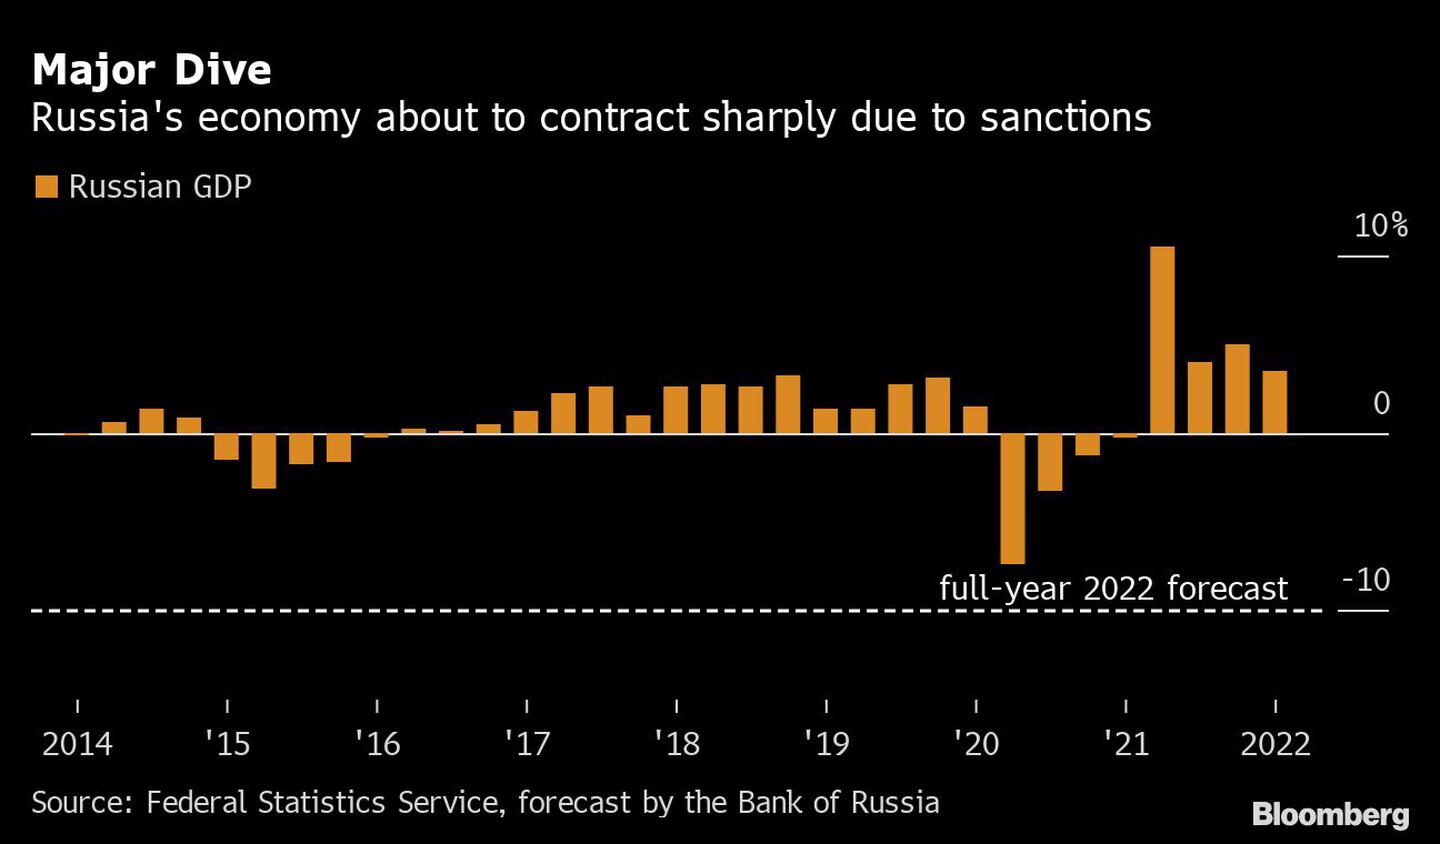 La economía rusa está a punto de sufrir una fuerte contracción debido a las sanciones
Fuente: Servicio federal de estadísticas, estimados por el banco de Rusia.dfd